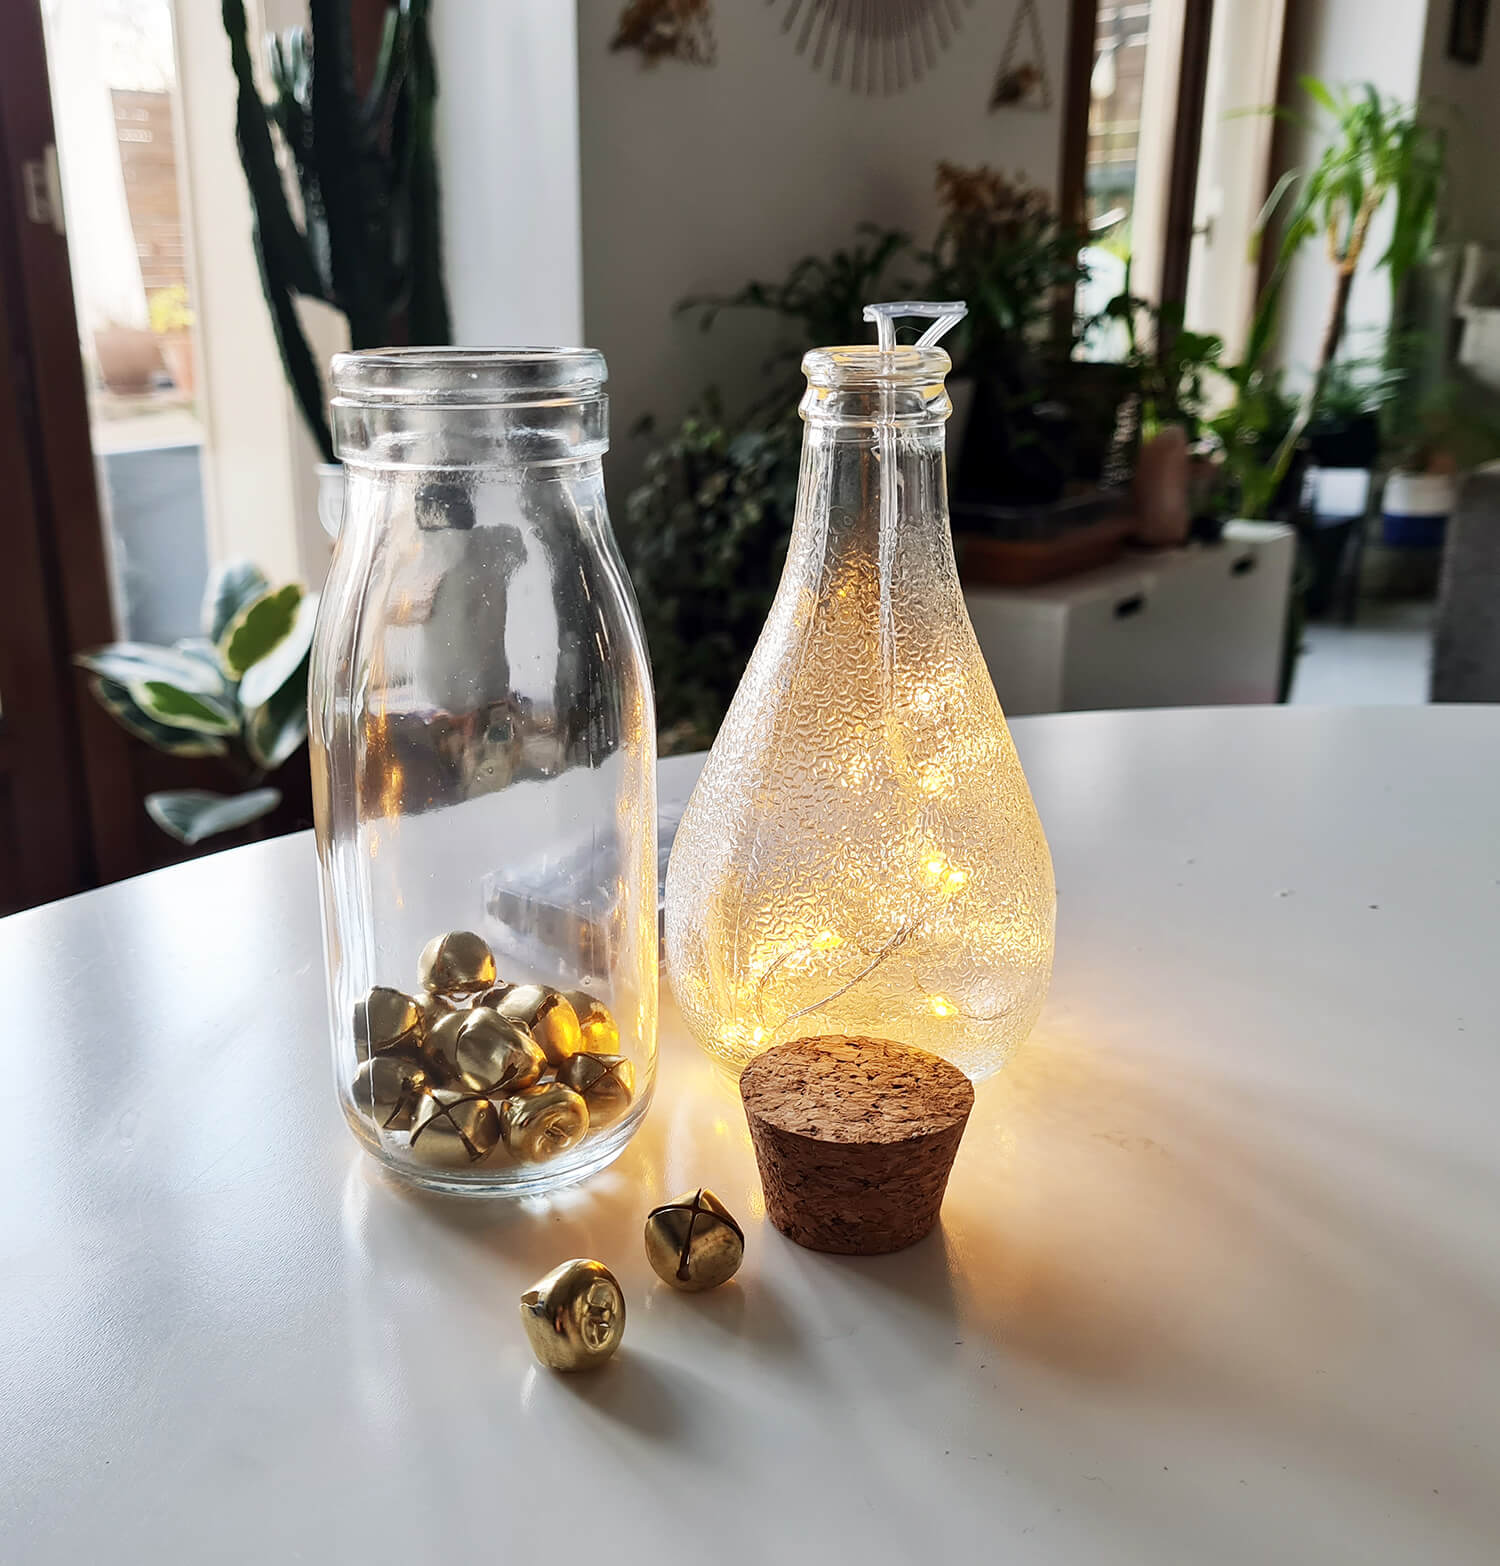 20201211 132941 - DIY festif : recycler des bouteilles en verre pour décorer la table des fêtes